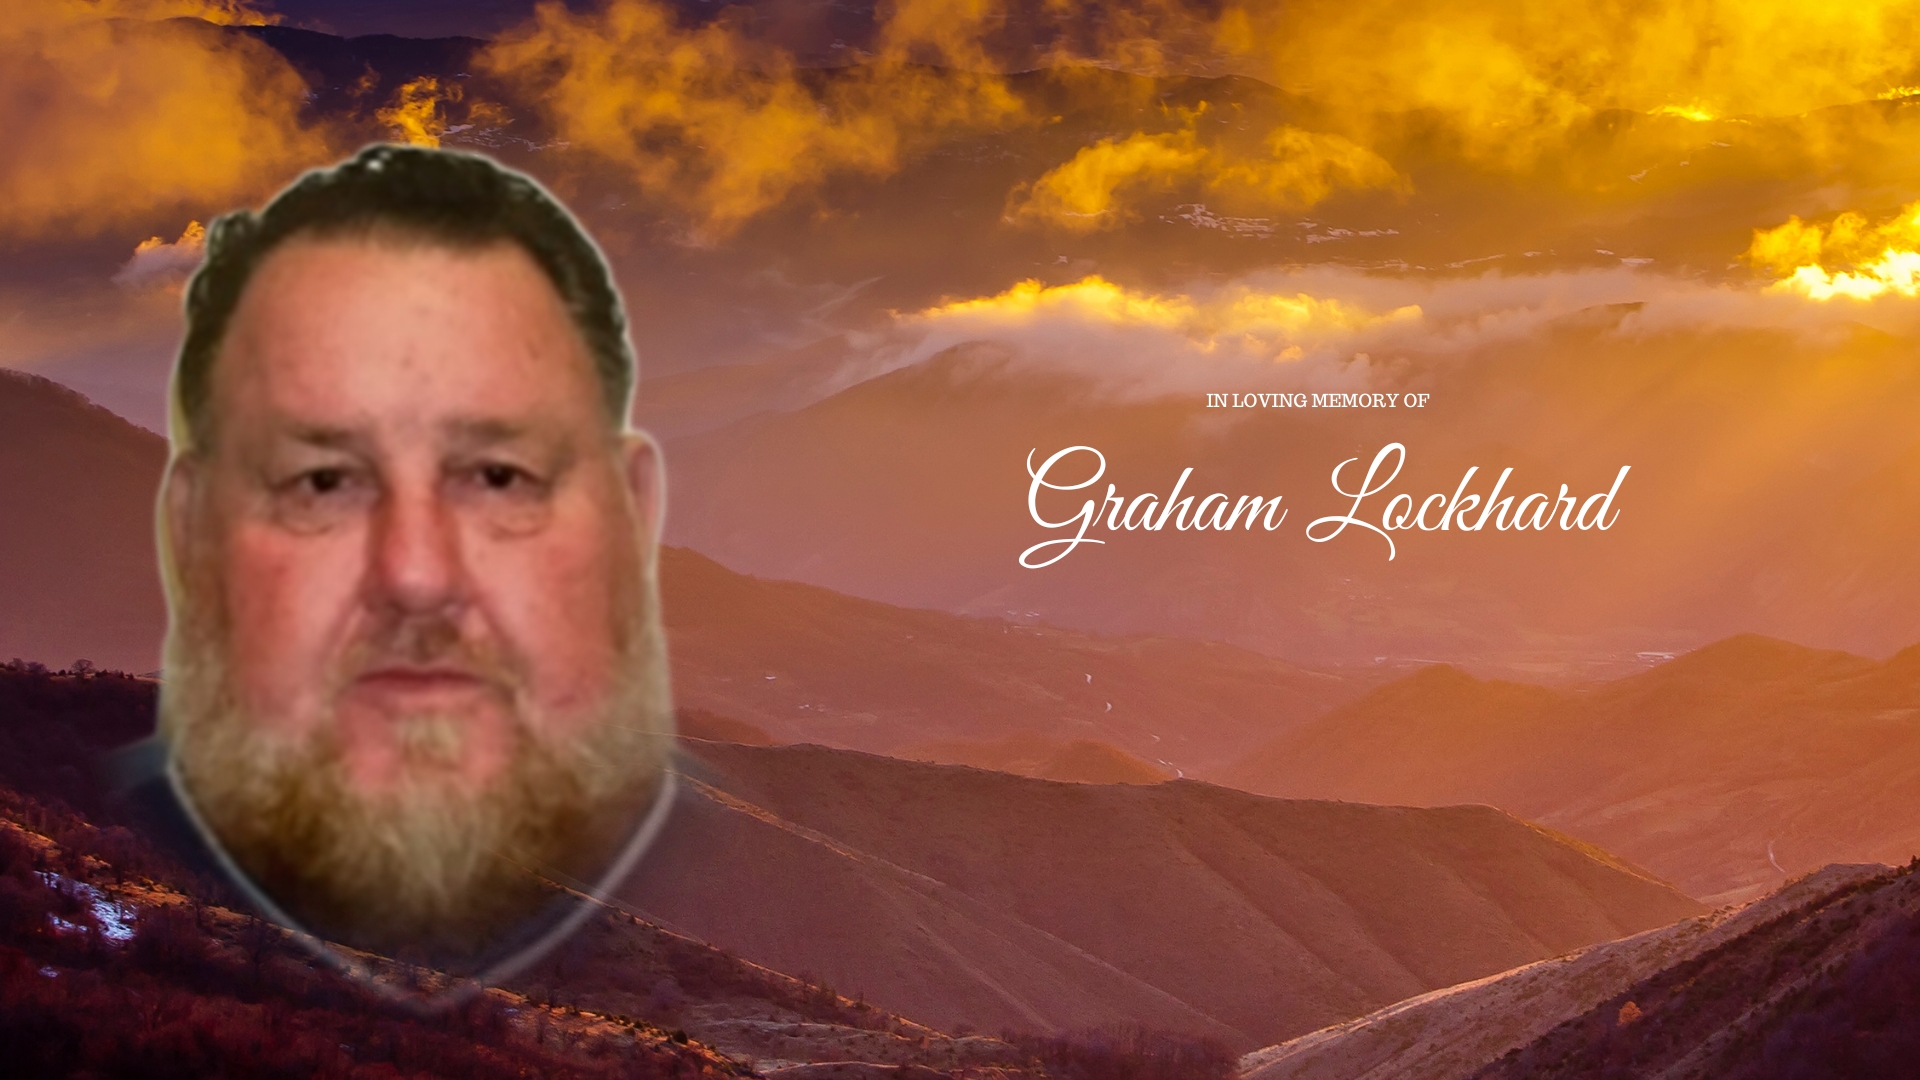 Graham Lockhard